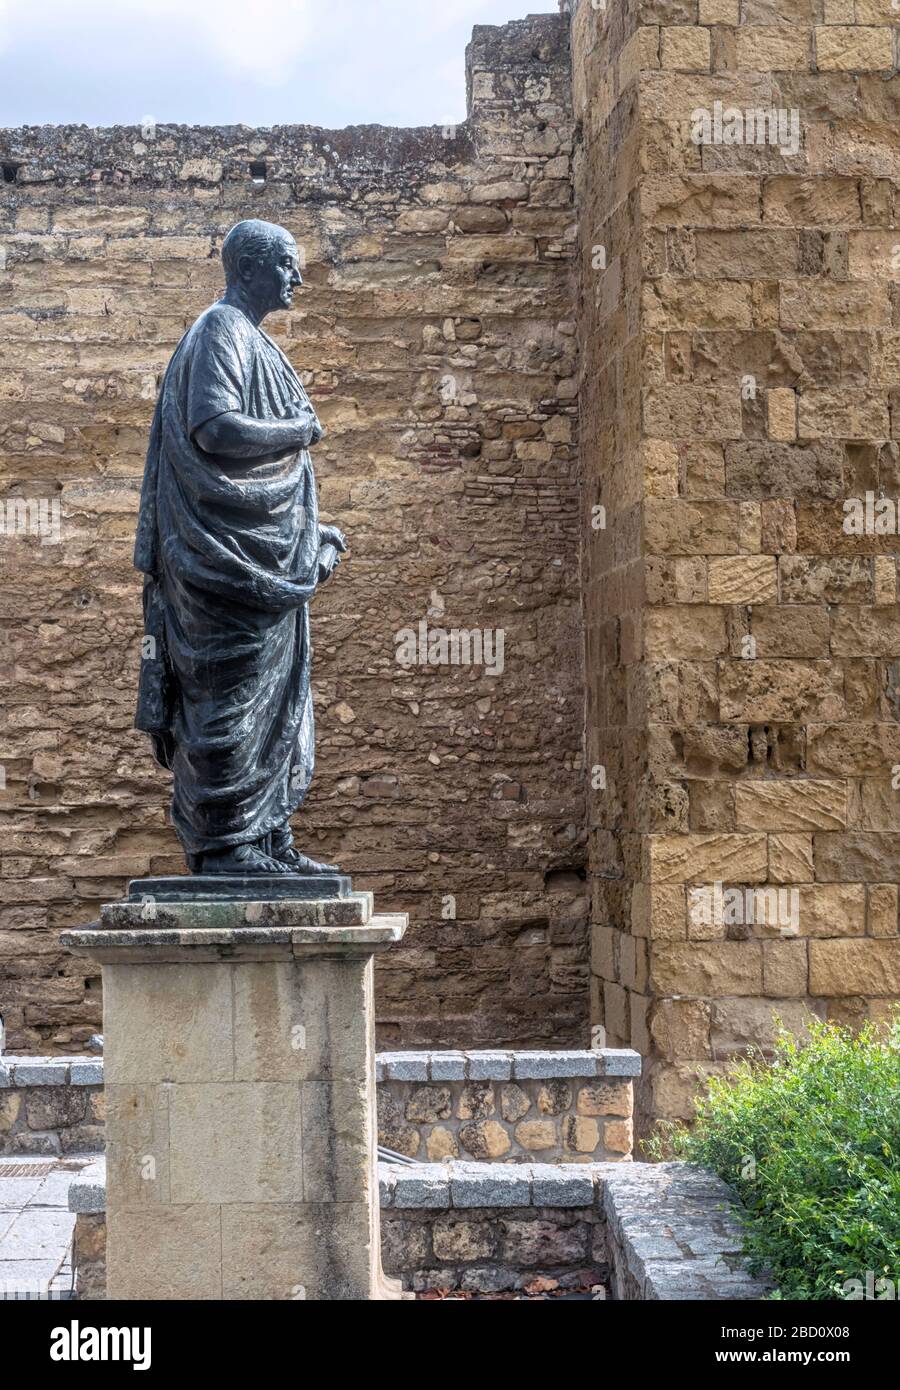 Cordova, Spagna - 10 ottobre 2019: Statua di Lucio Anneo Seneca vicino alla Puerta de Almodovar, Cordoba, Andalusia, Spagna Foto Stock